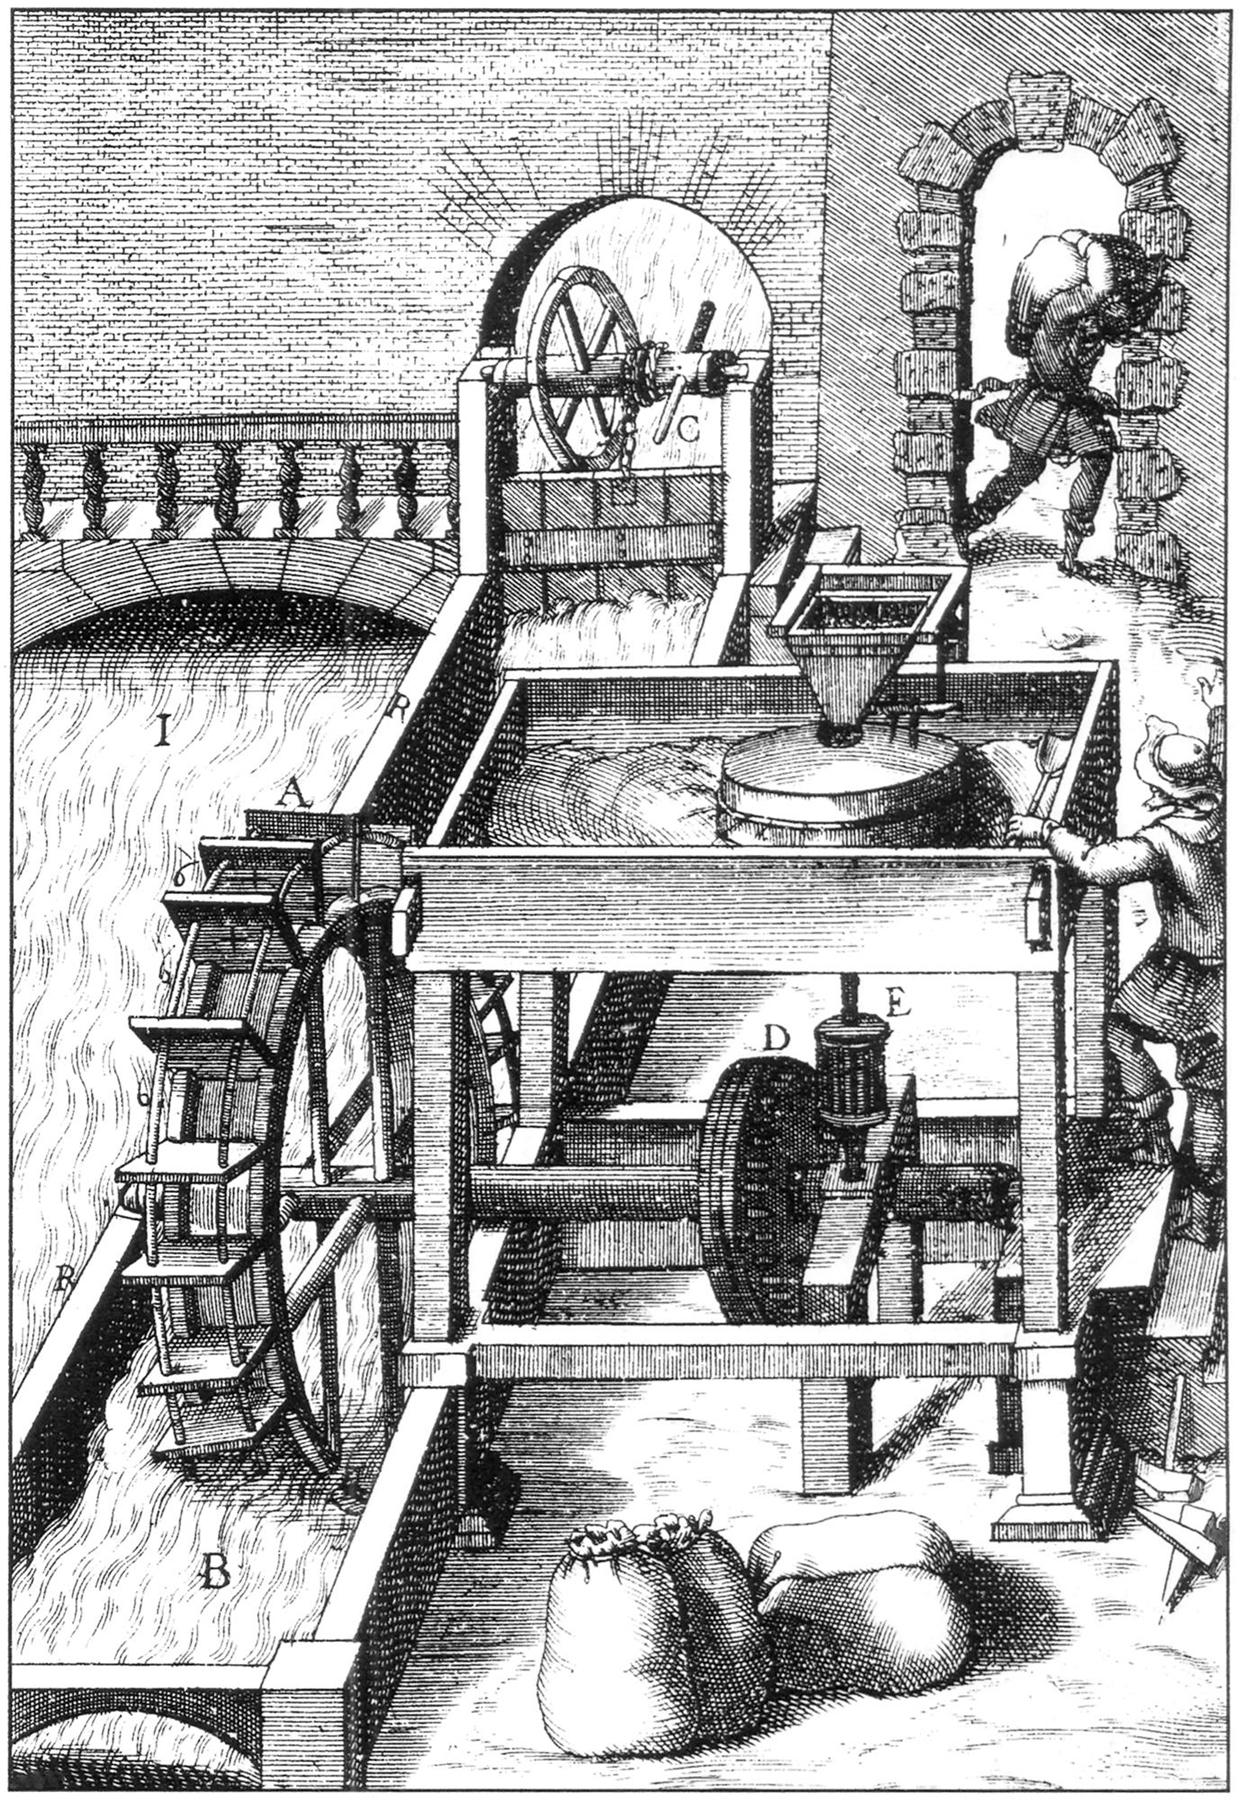 Mulino ad acqua terragno, Stampa del primo ‘600.